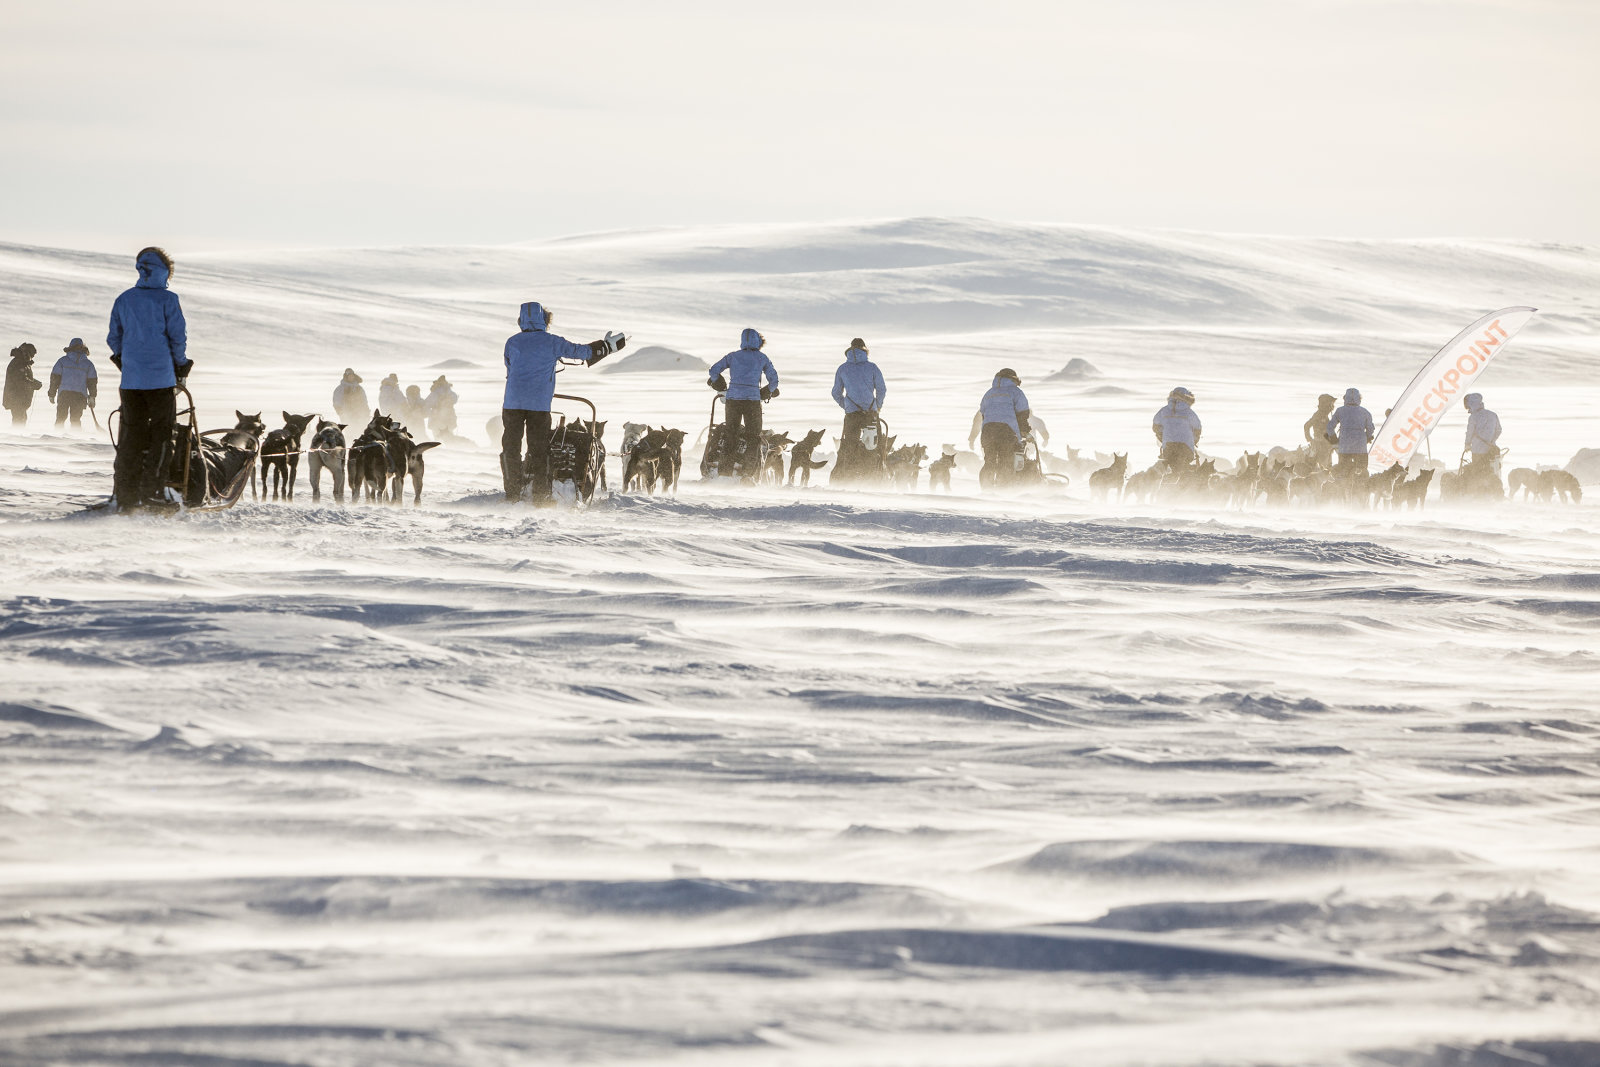 A szerencsés résztvevőket szakképzett túravezetők és több mint 200 szánhúzó kutya segíti majd a 300 kilométeres út során.